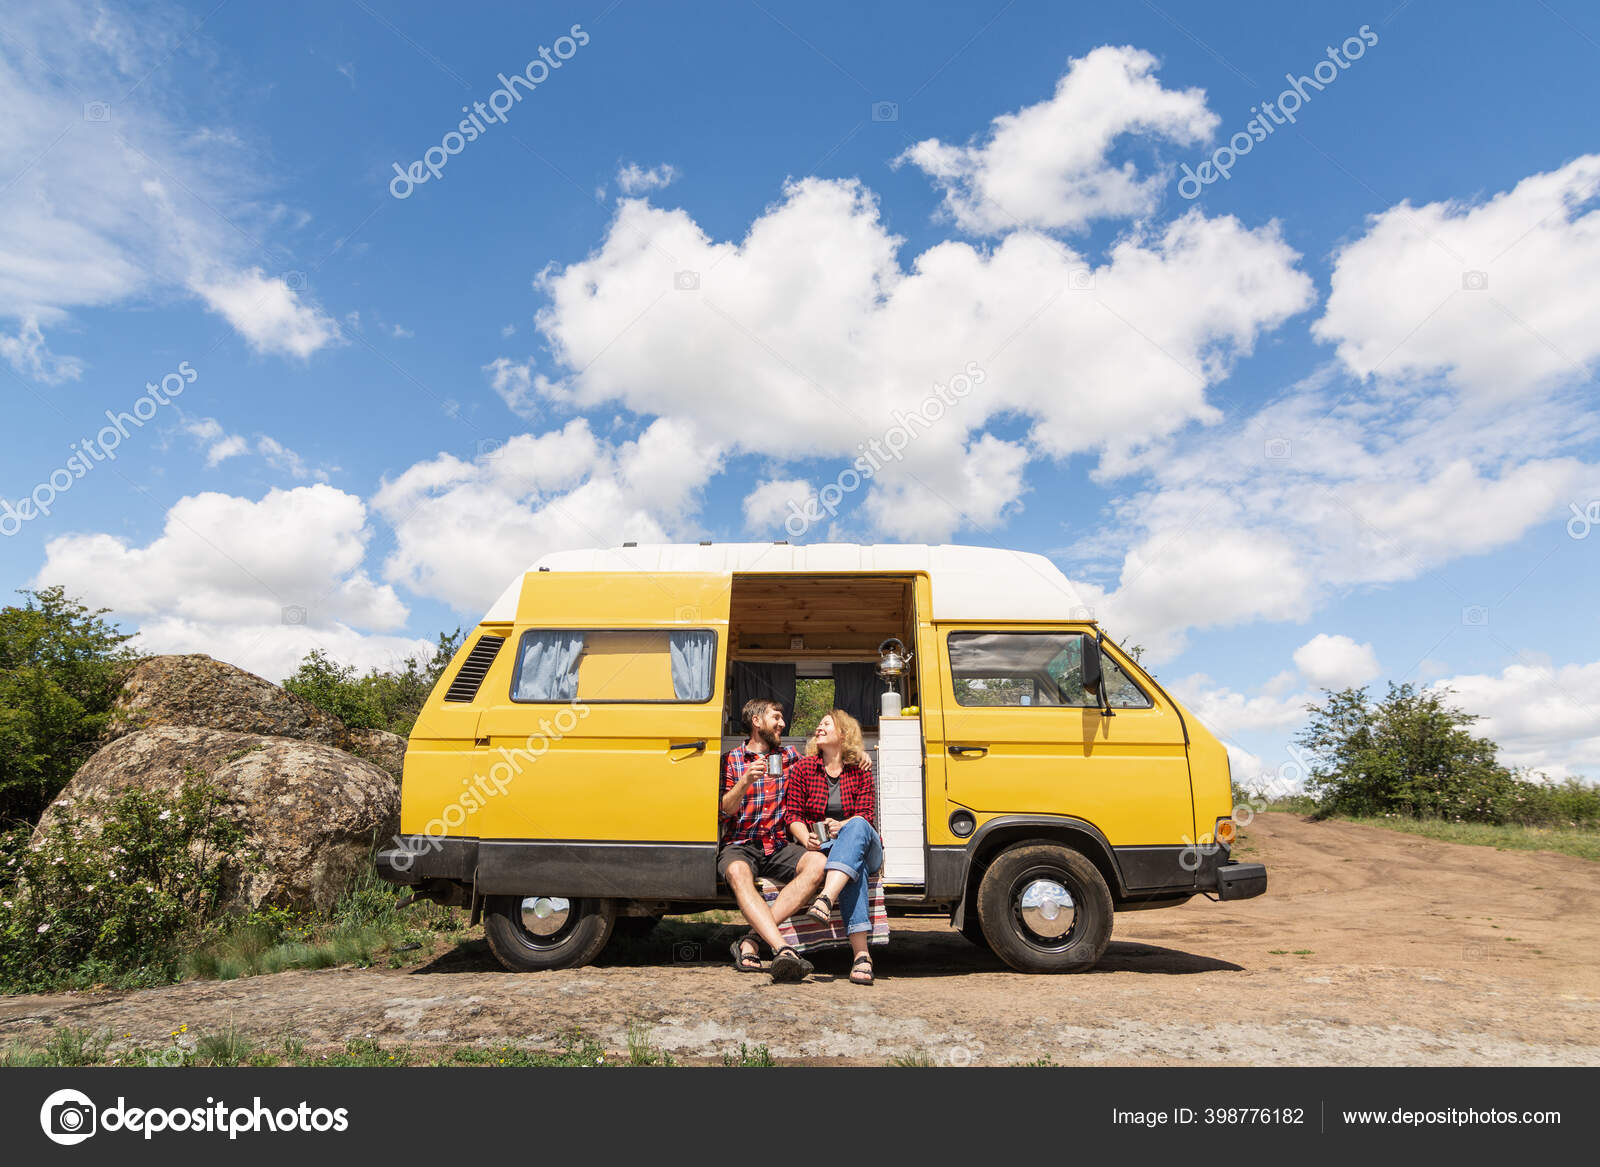 yellow camper van